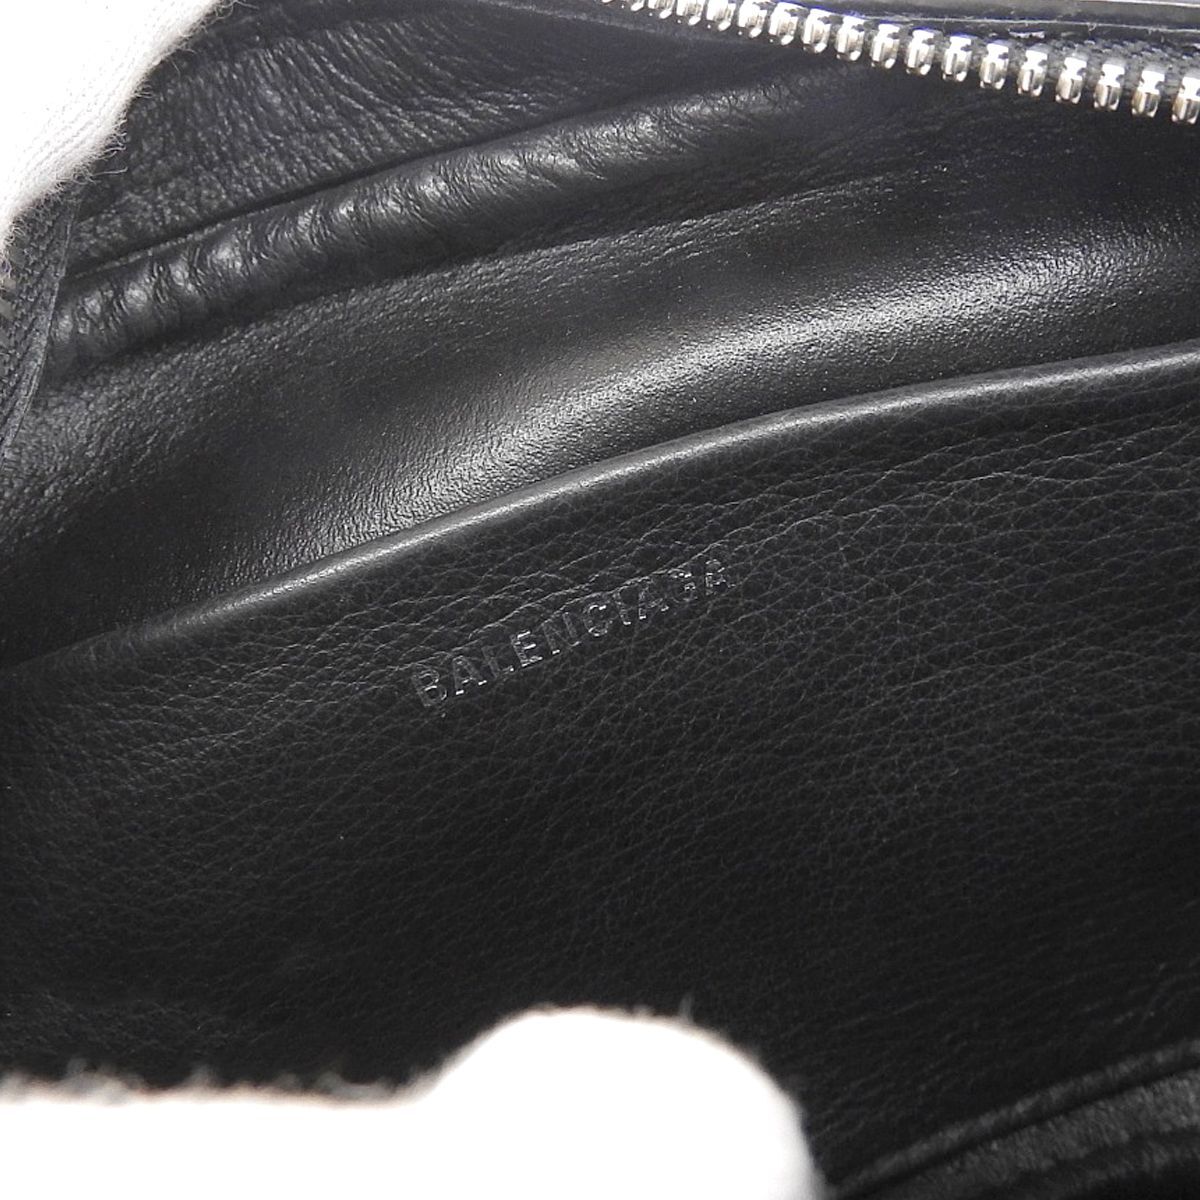  Balenciaga BALENCIAGA камера сумка сумка на плечо кожа черный женский мужской 4132